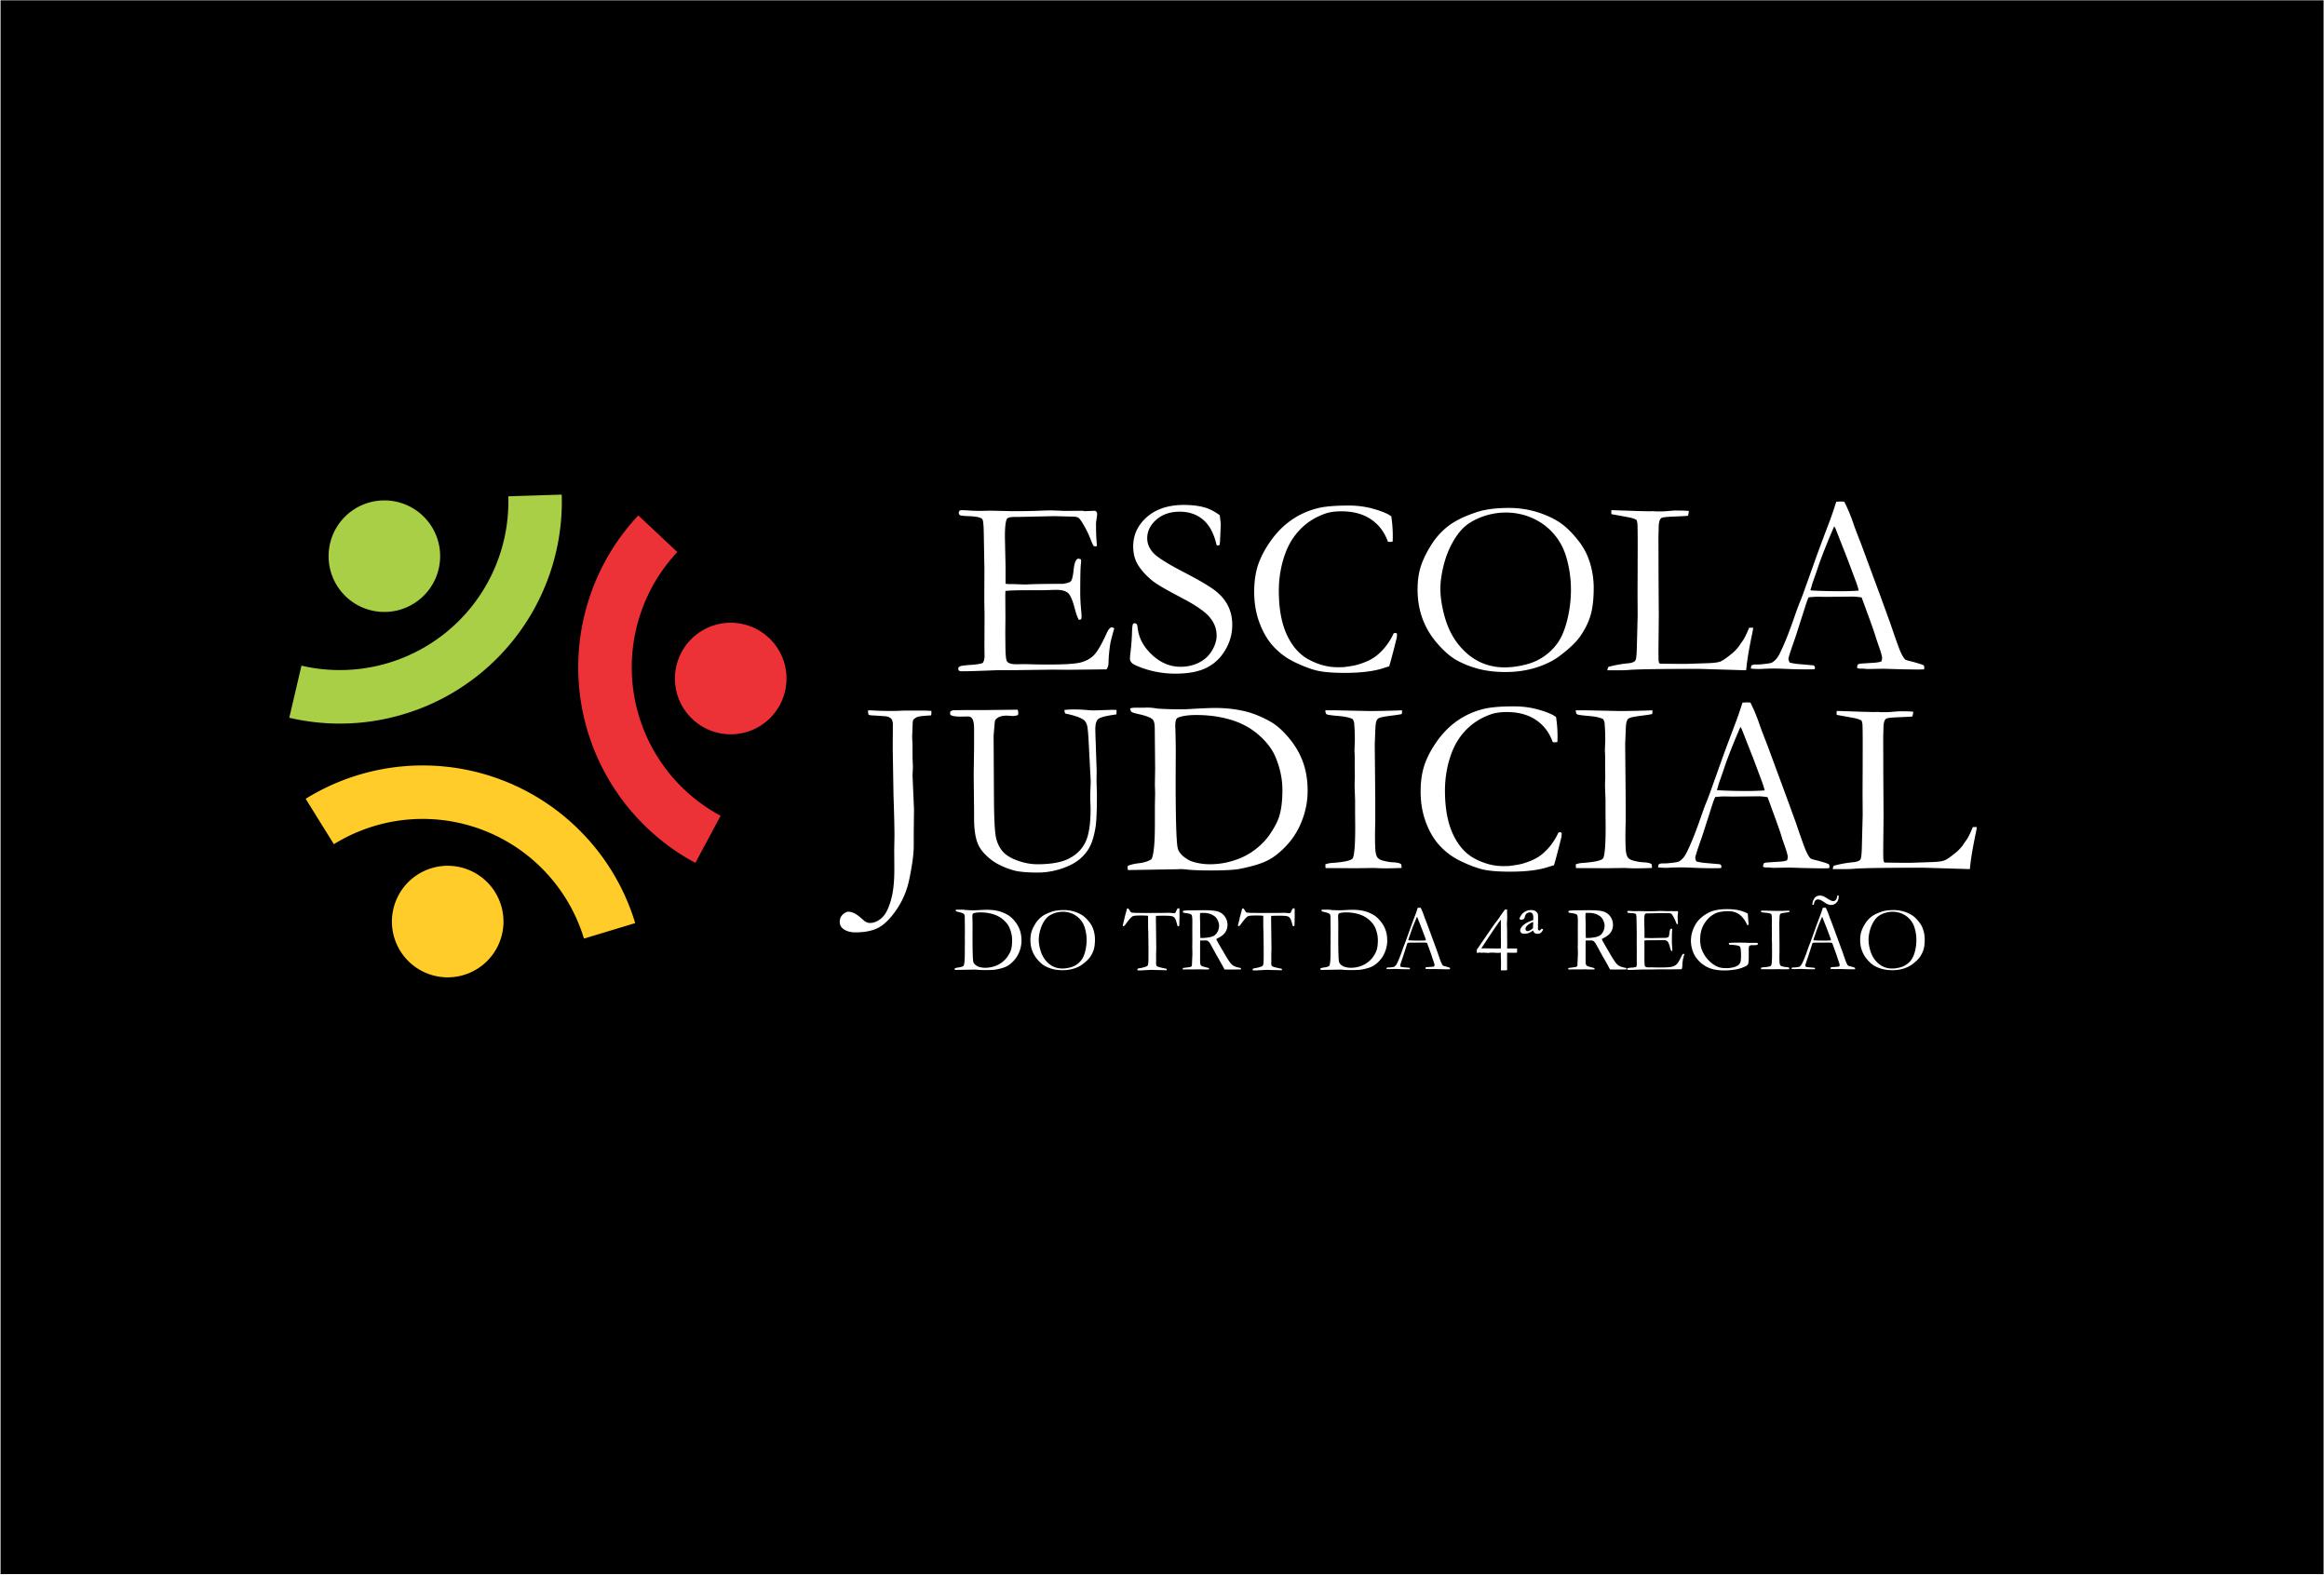 Banner retangular com fundo preto e logotipo da Escola Judicial do TRT4 no centro.